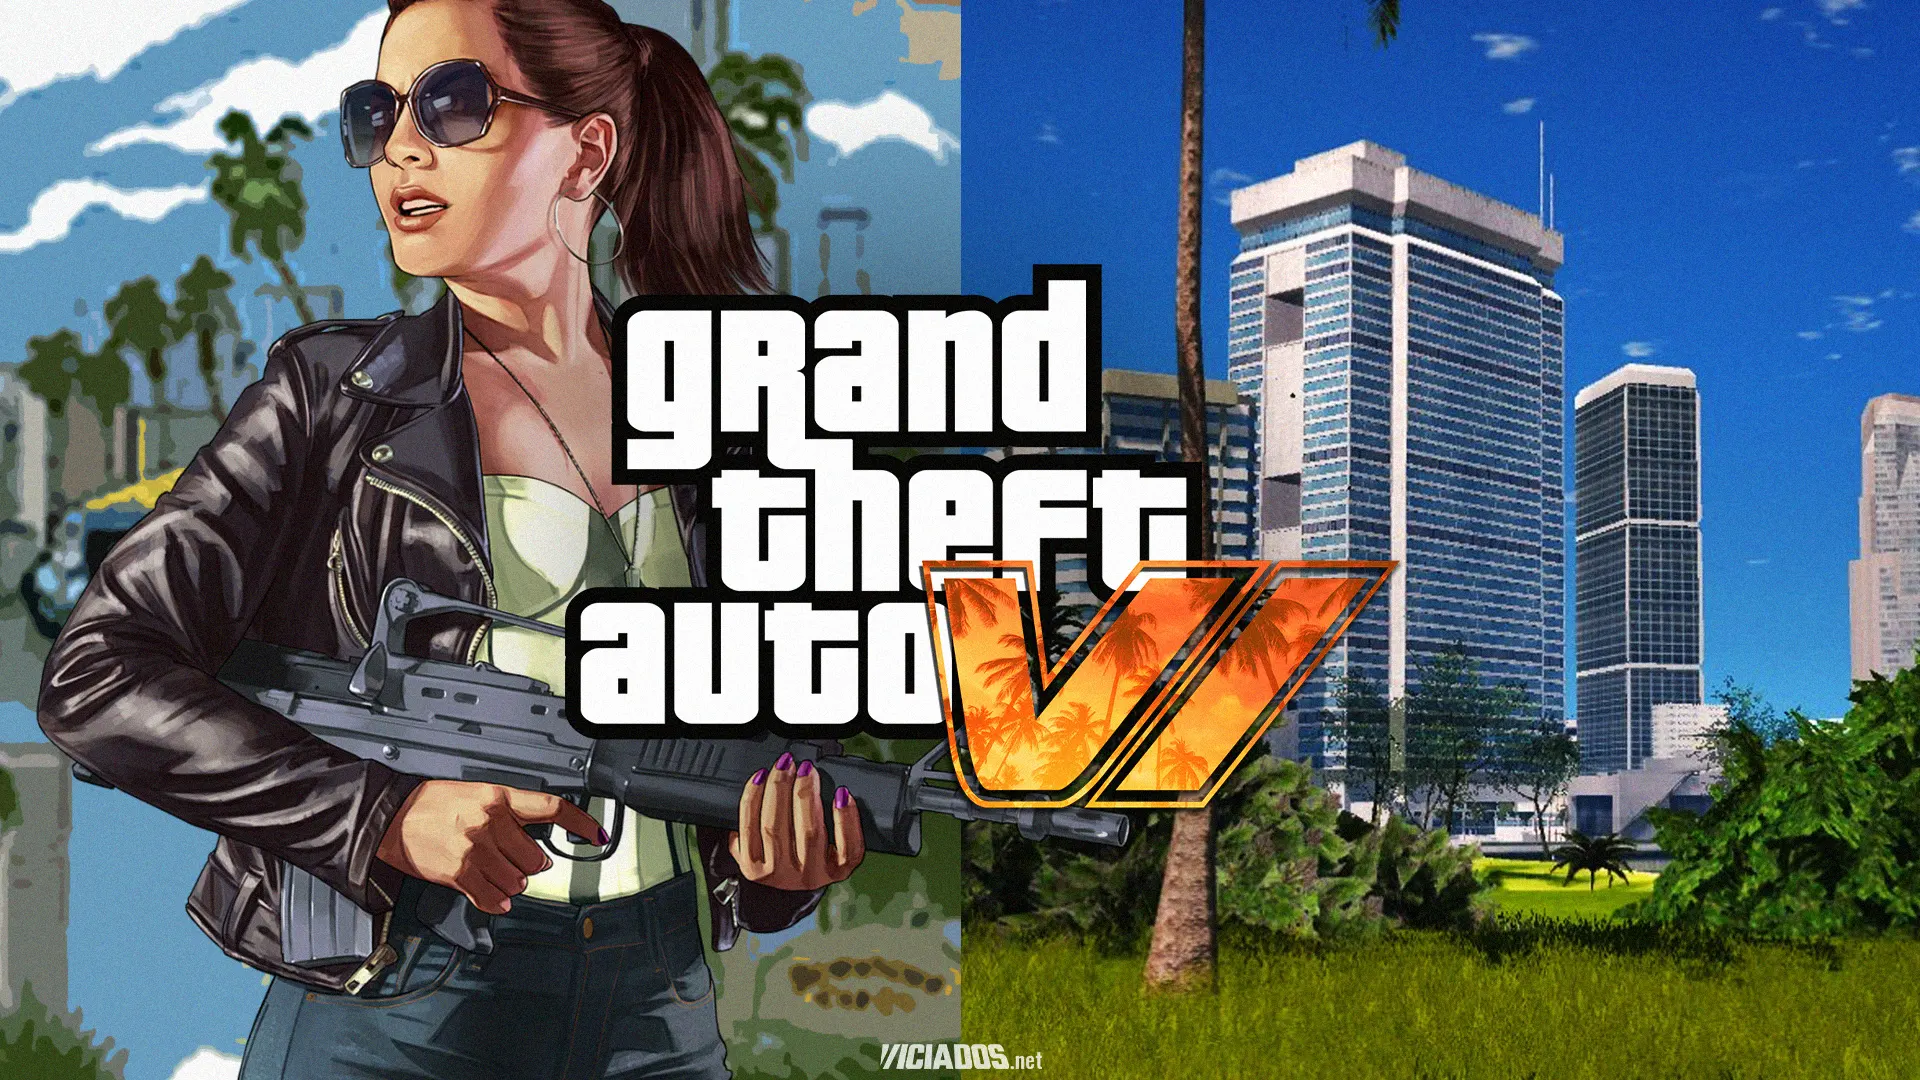 Apesar dos fãs quererem que a Rockstar Games revele GTA 6, a produtora continua lançando DLCs para o Grand Theft Auto Online, no entanto, um dataminer pode ter encontrado uma artwork de GTA VI nos arquivos do game.